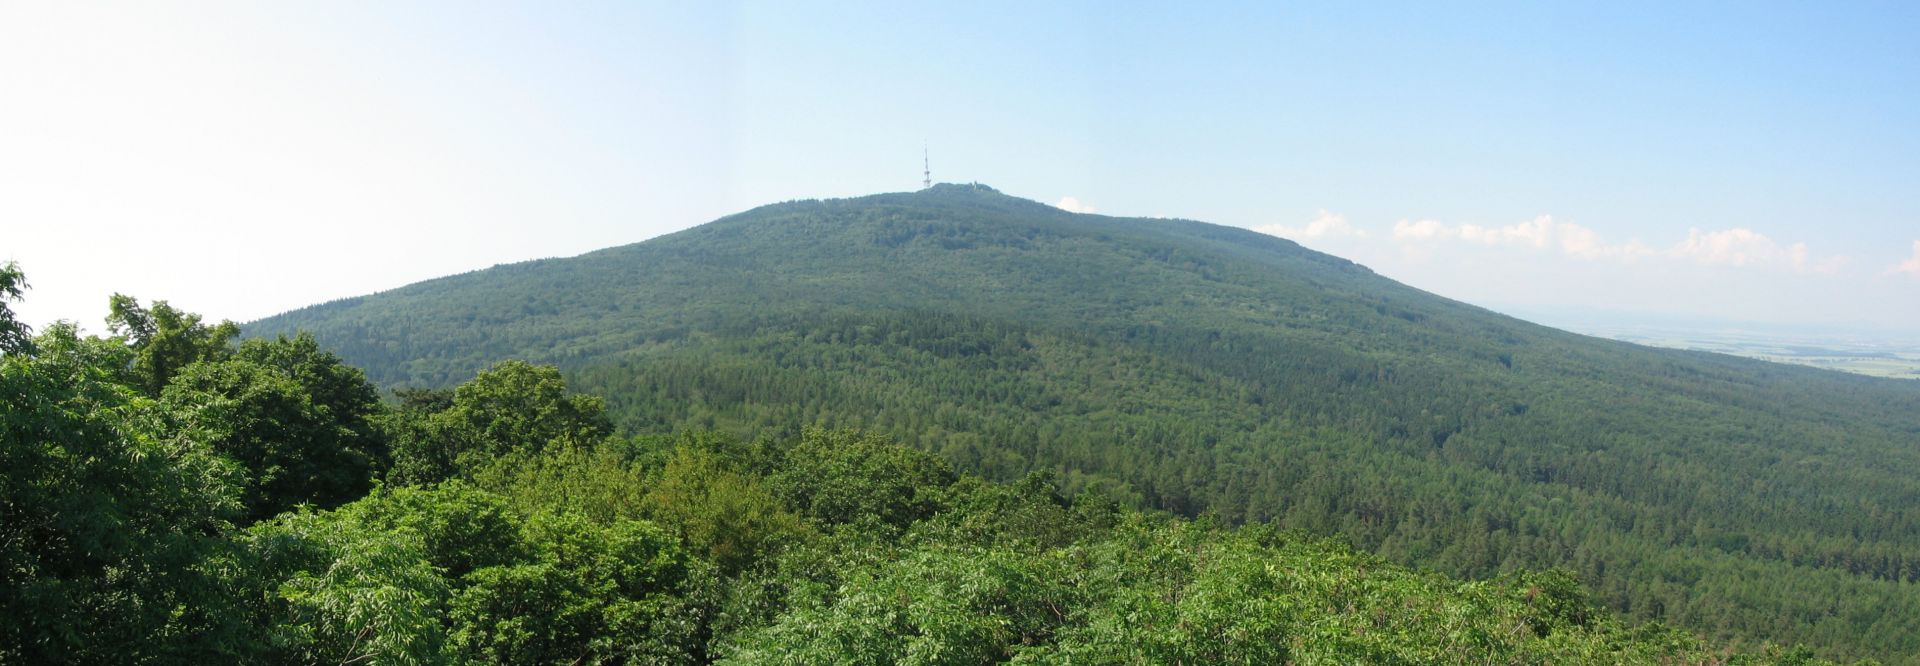 Góra Ślęża Nature Reserve